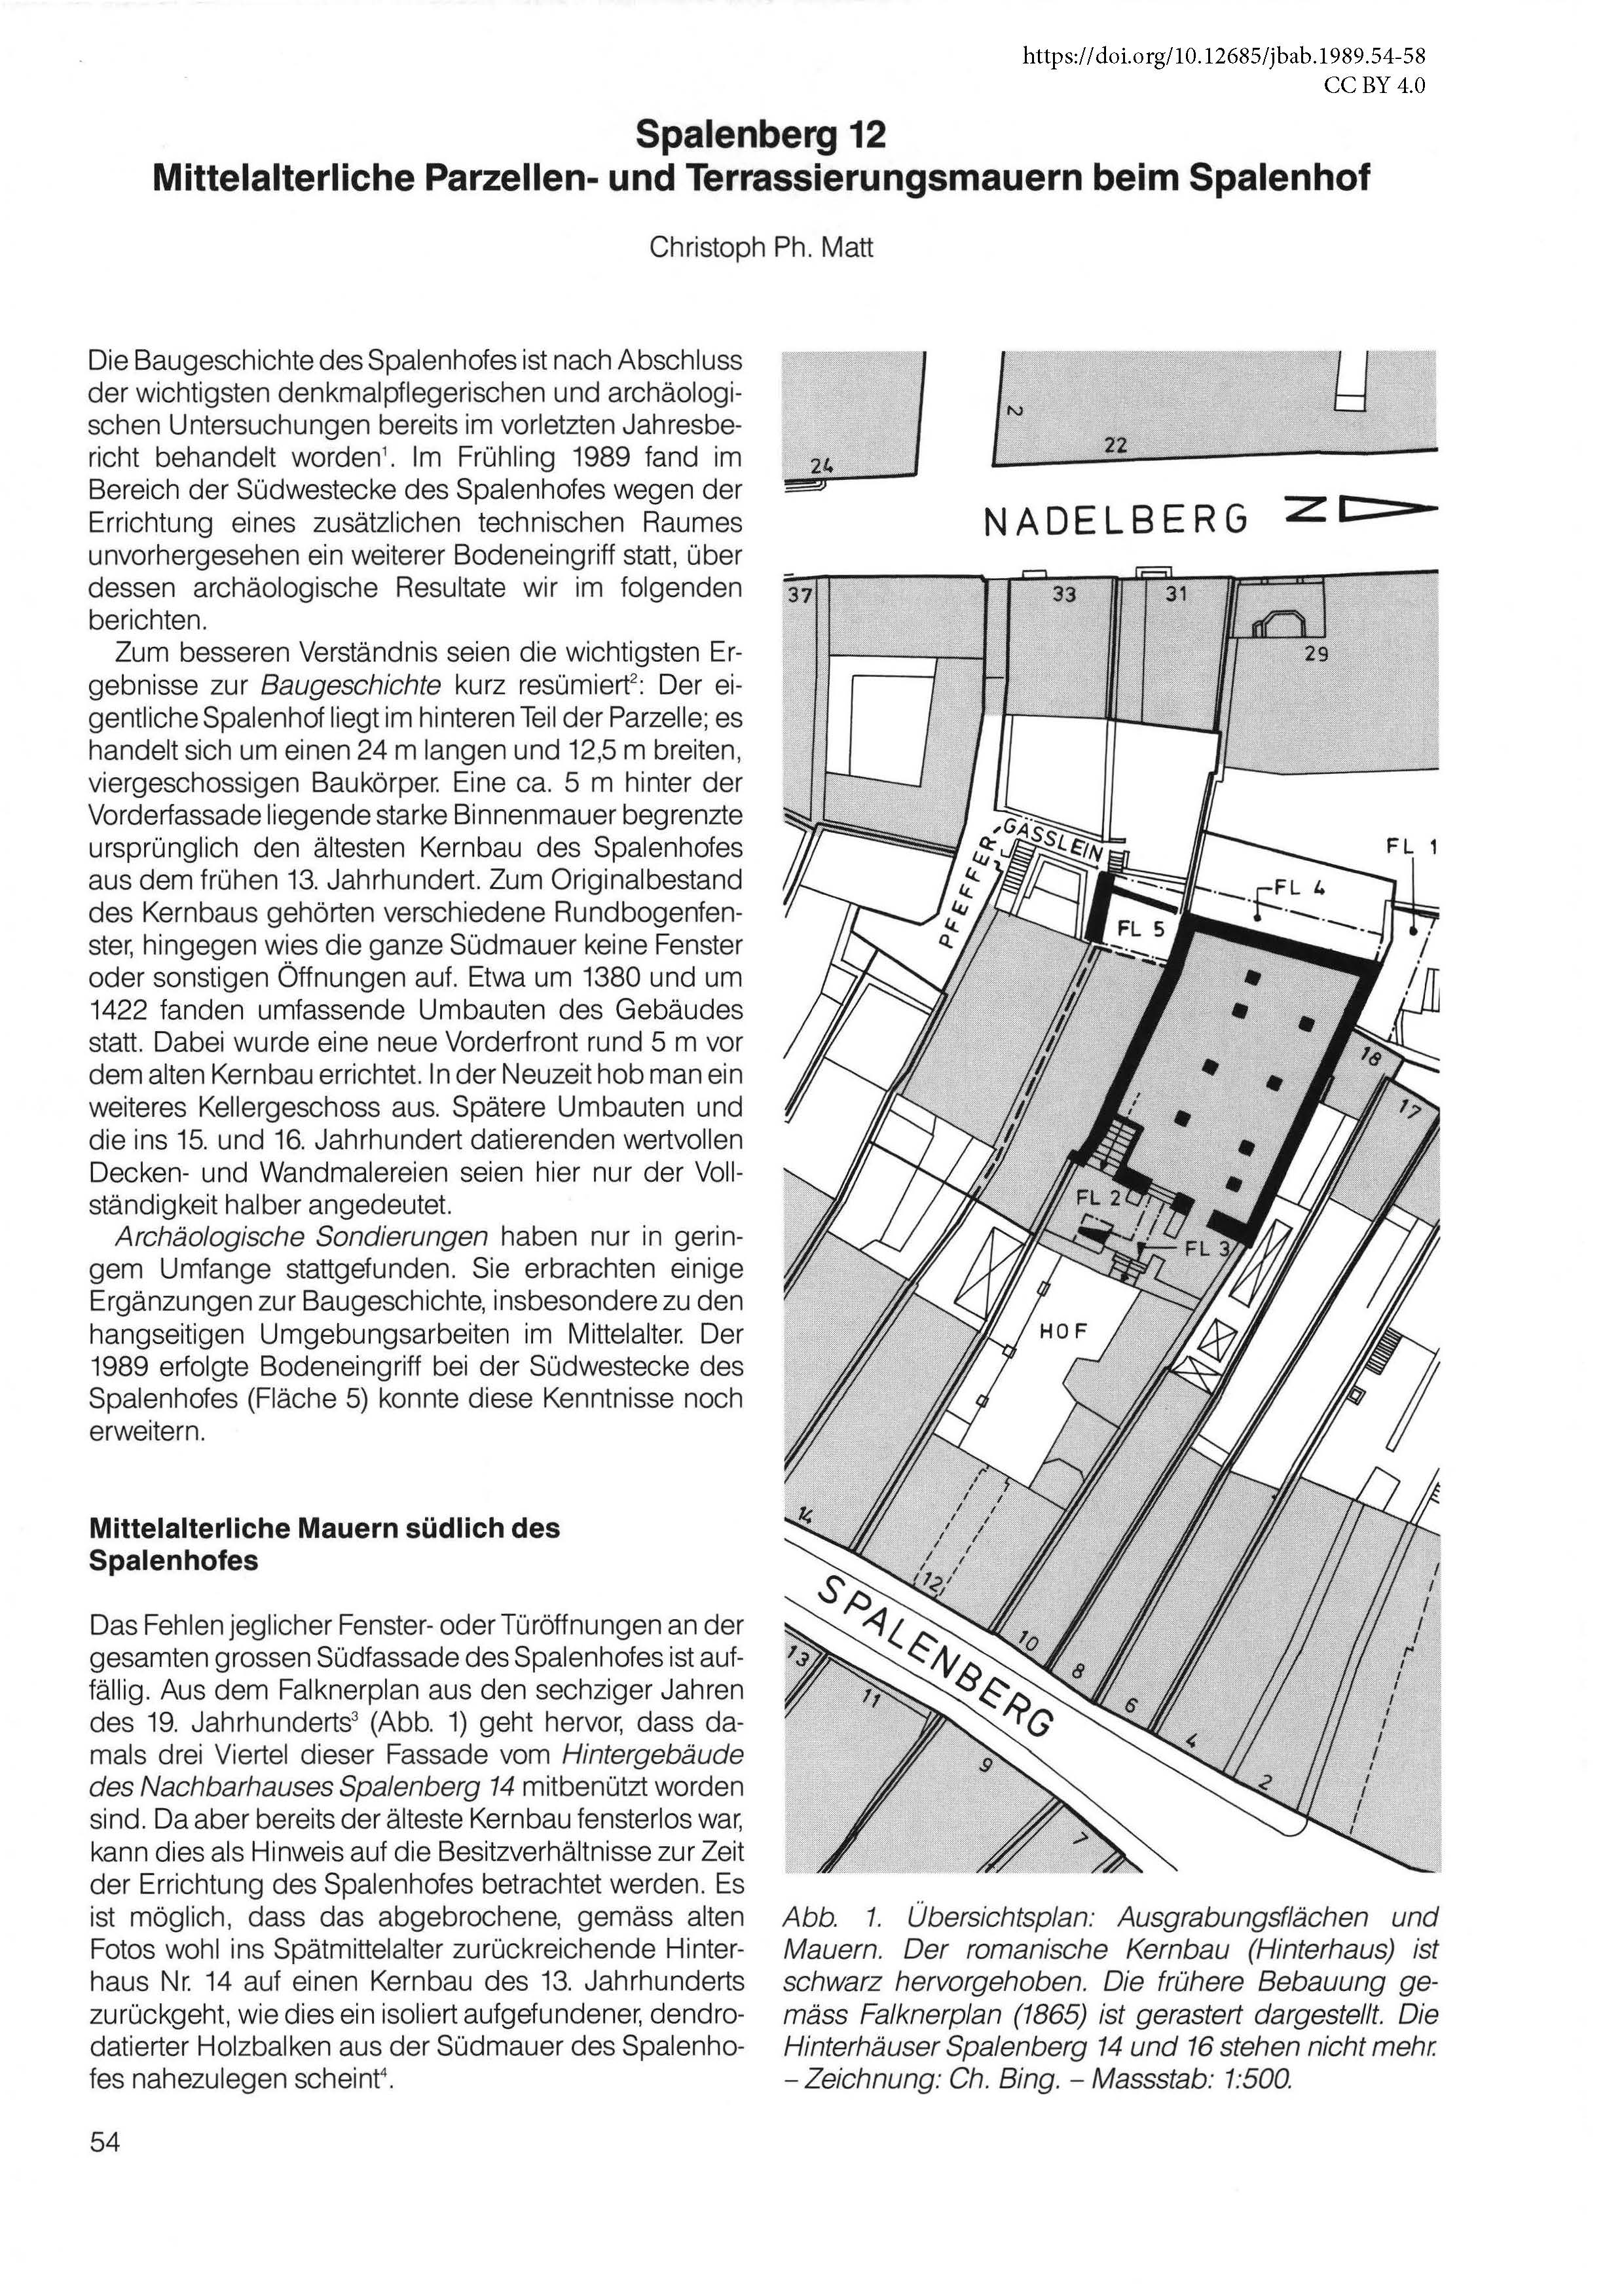 Erste Seite des Artikels über die mittelalterlichen Parzellen- und Terrassierungsmauern beim Spalenhof